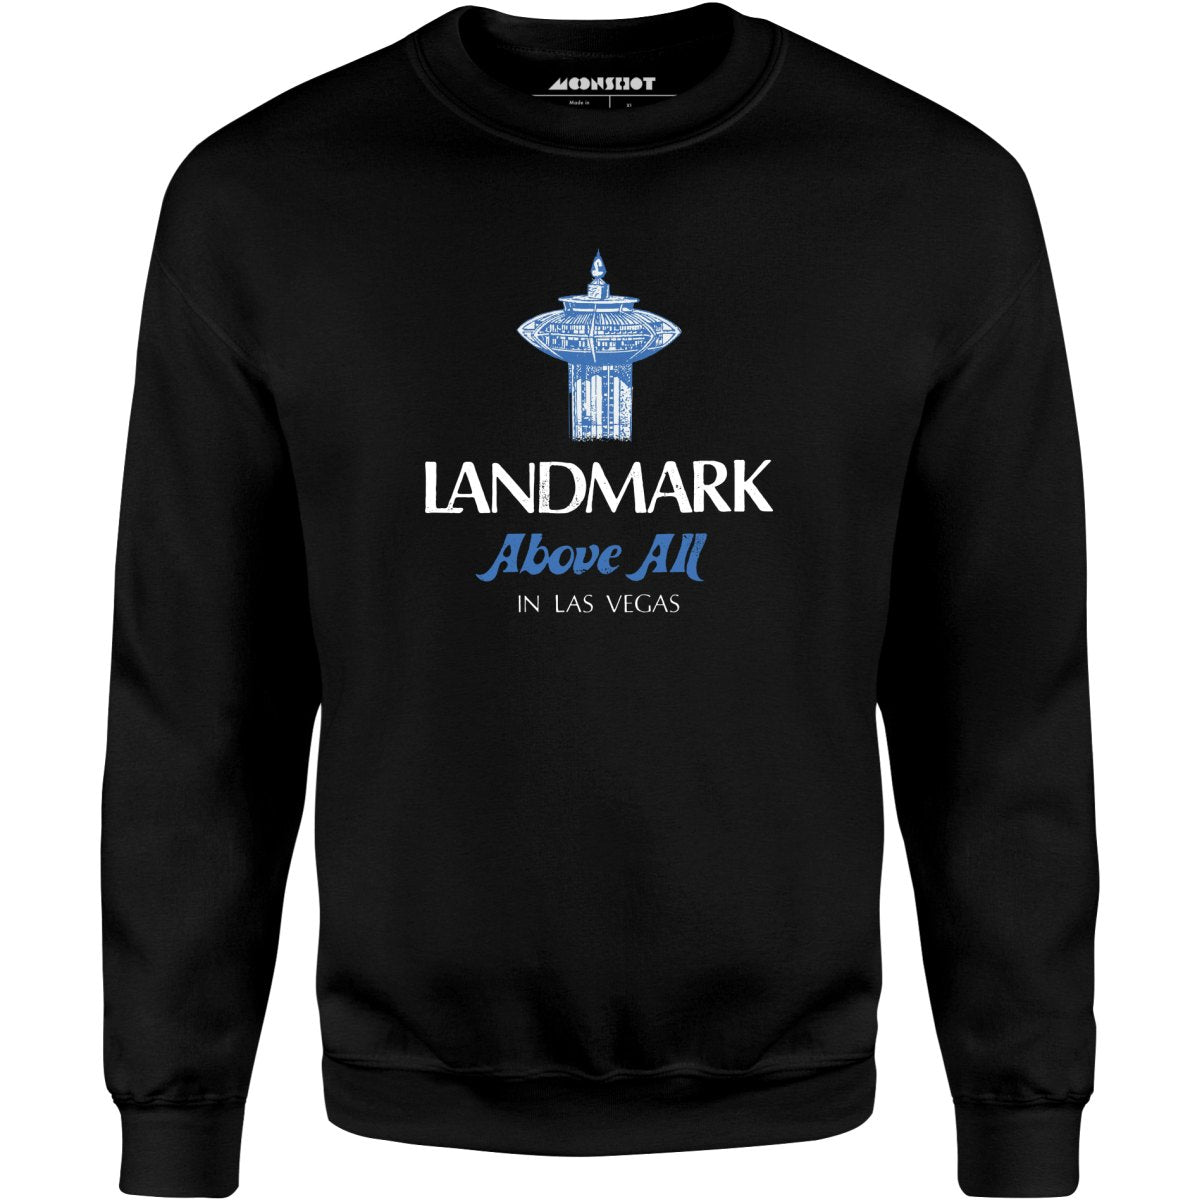 Landmark Above All - Vintage Las Vegas - Unisex Sweatshirt